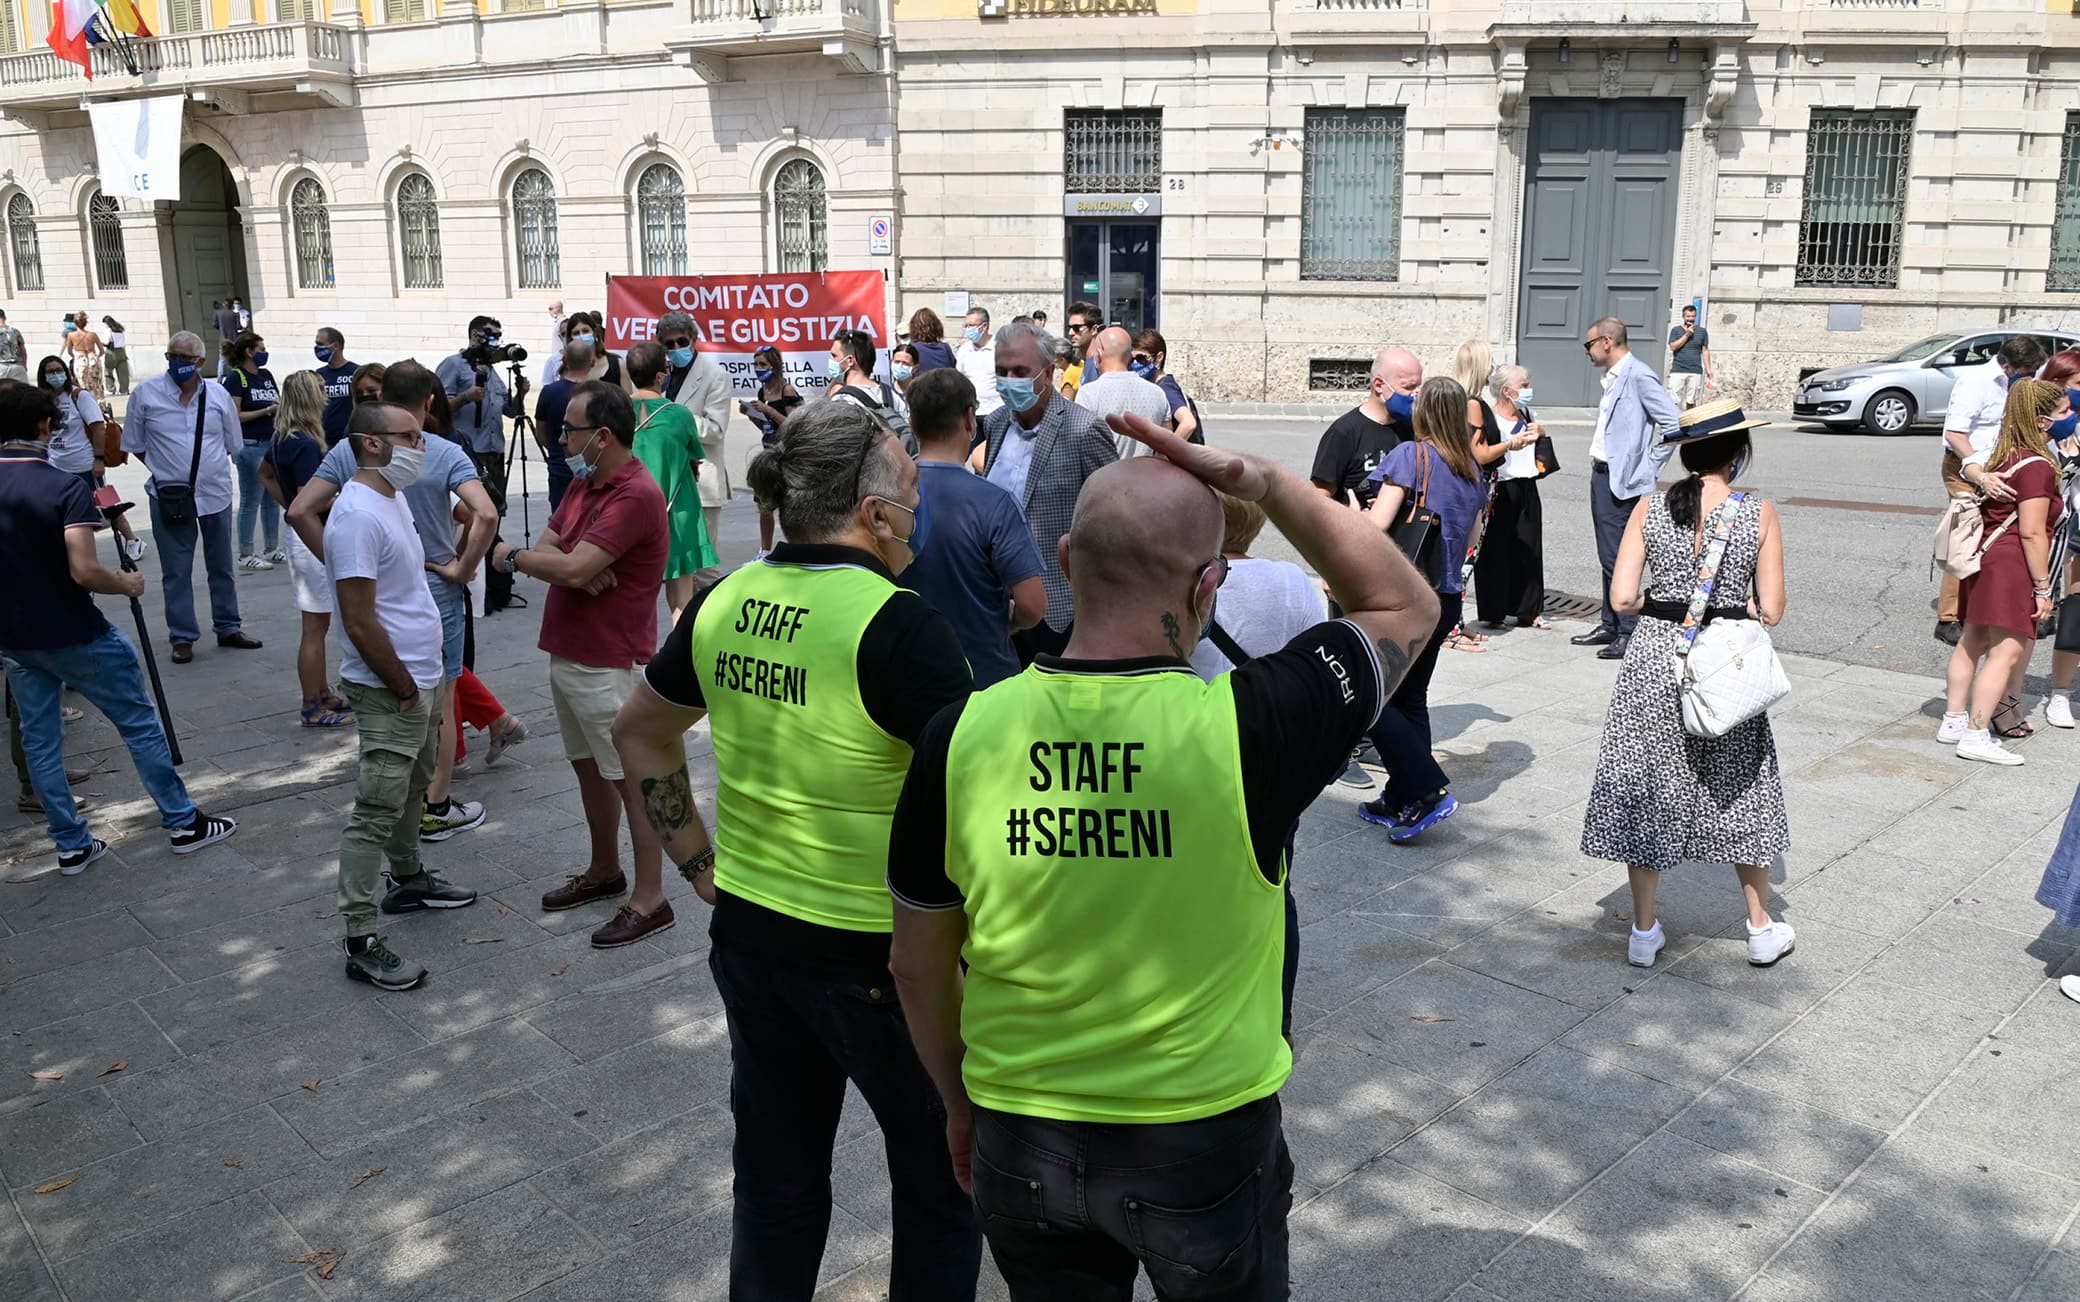 La protesta a Bergamo